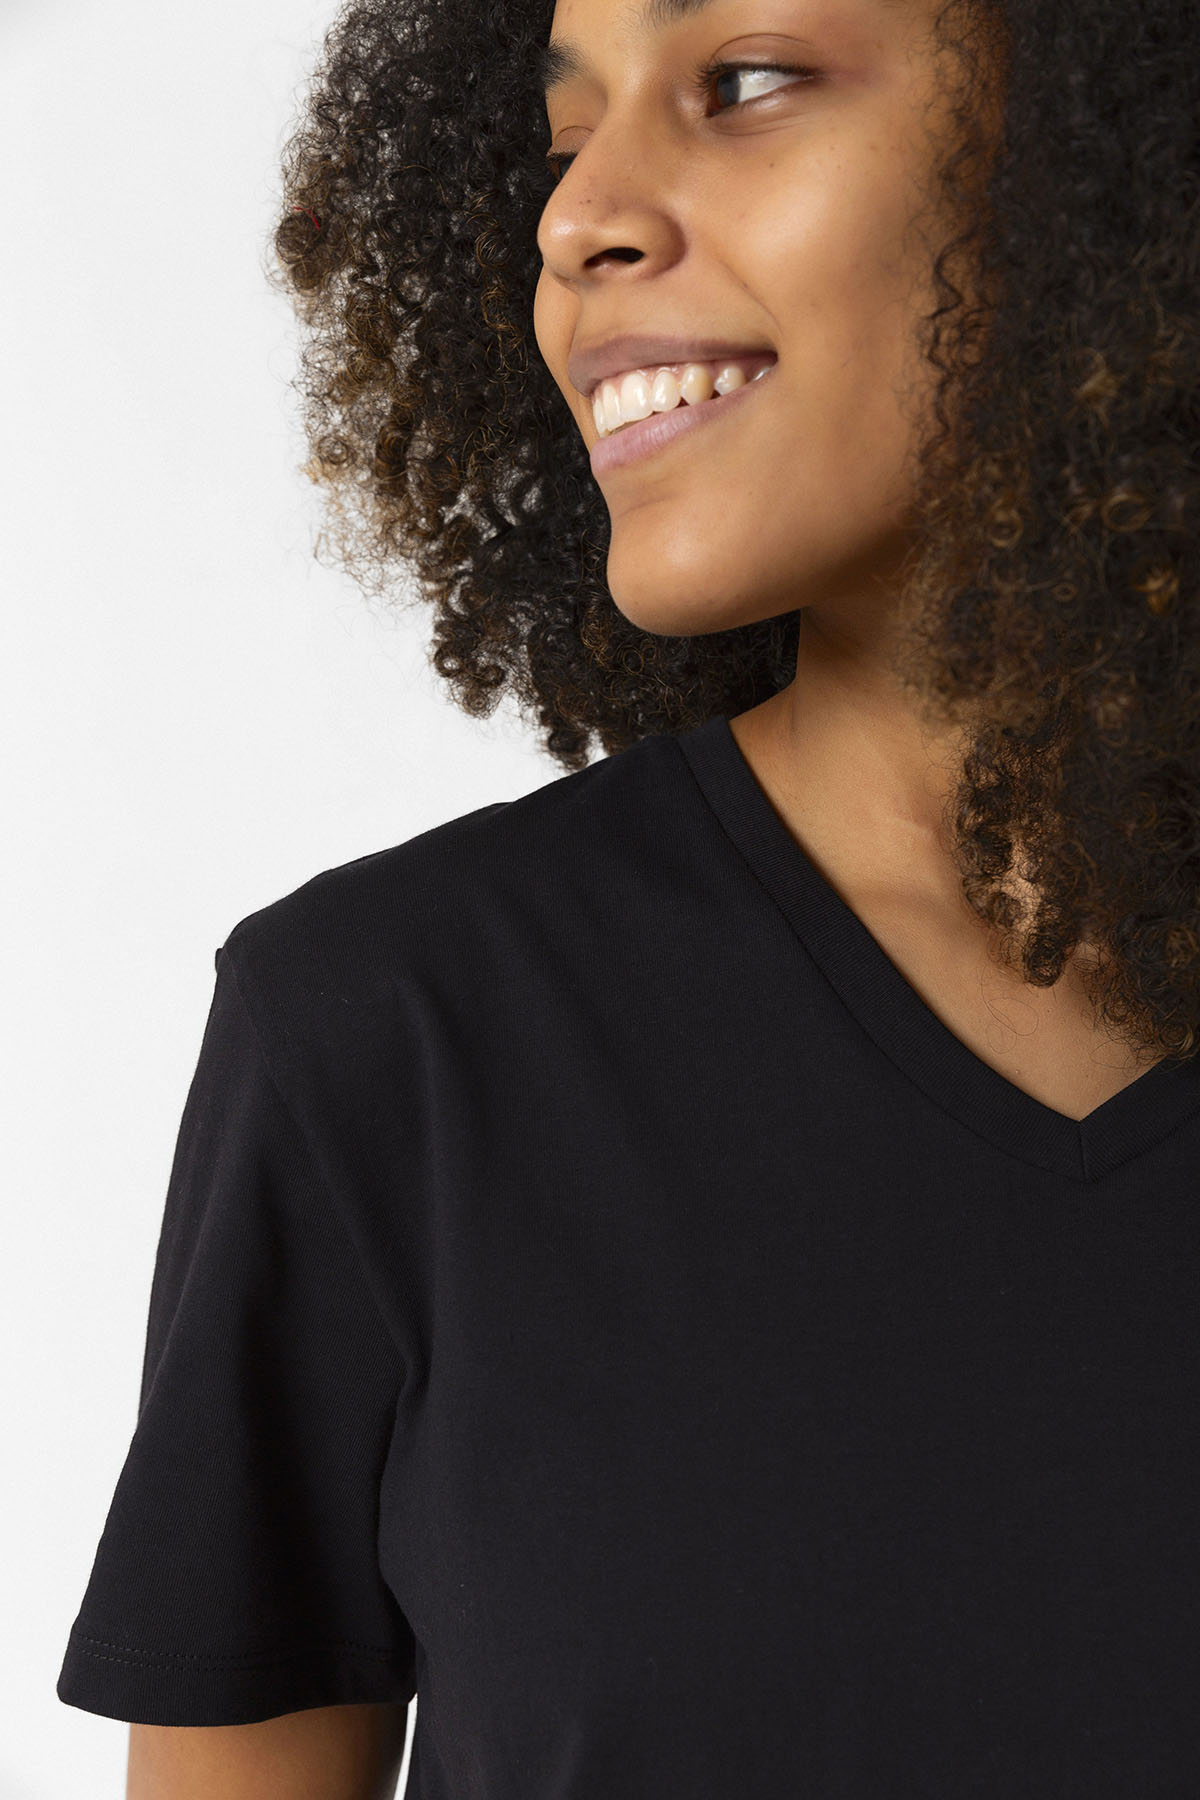 Chicago Fire Logo Siyah Kadın V yaka Tshirt